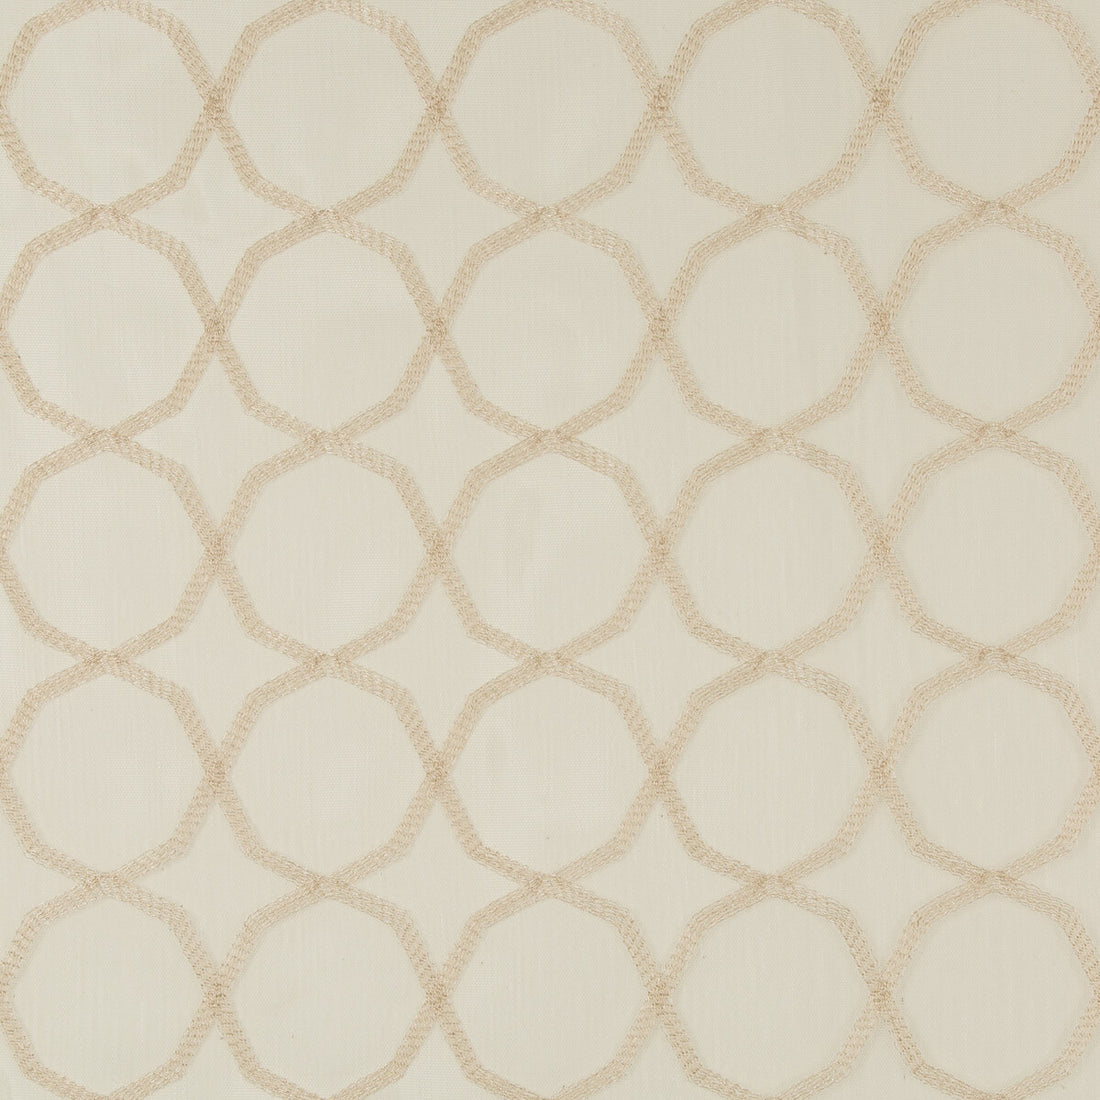 Kravet Basics fabric in 4714-116 color - pattern 4714.116.0 - by Kravet Basics